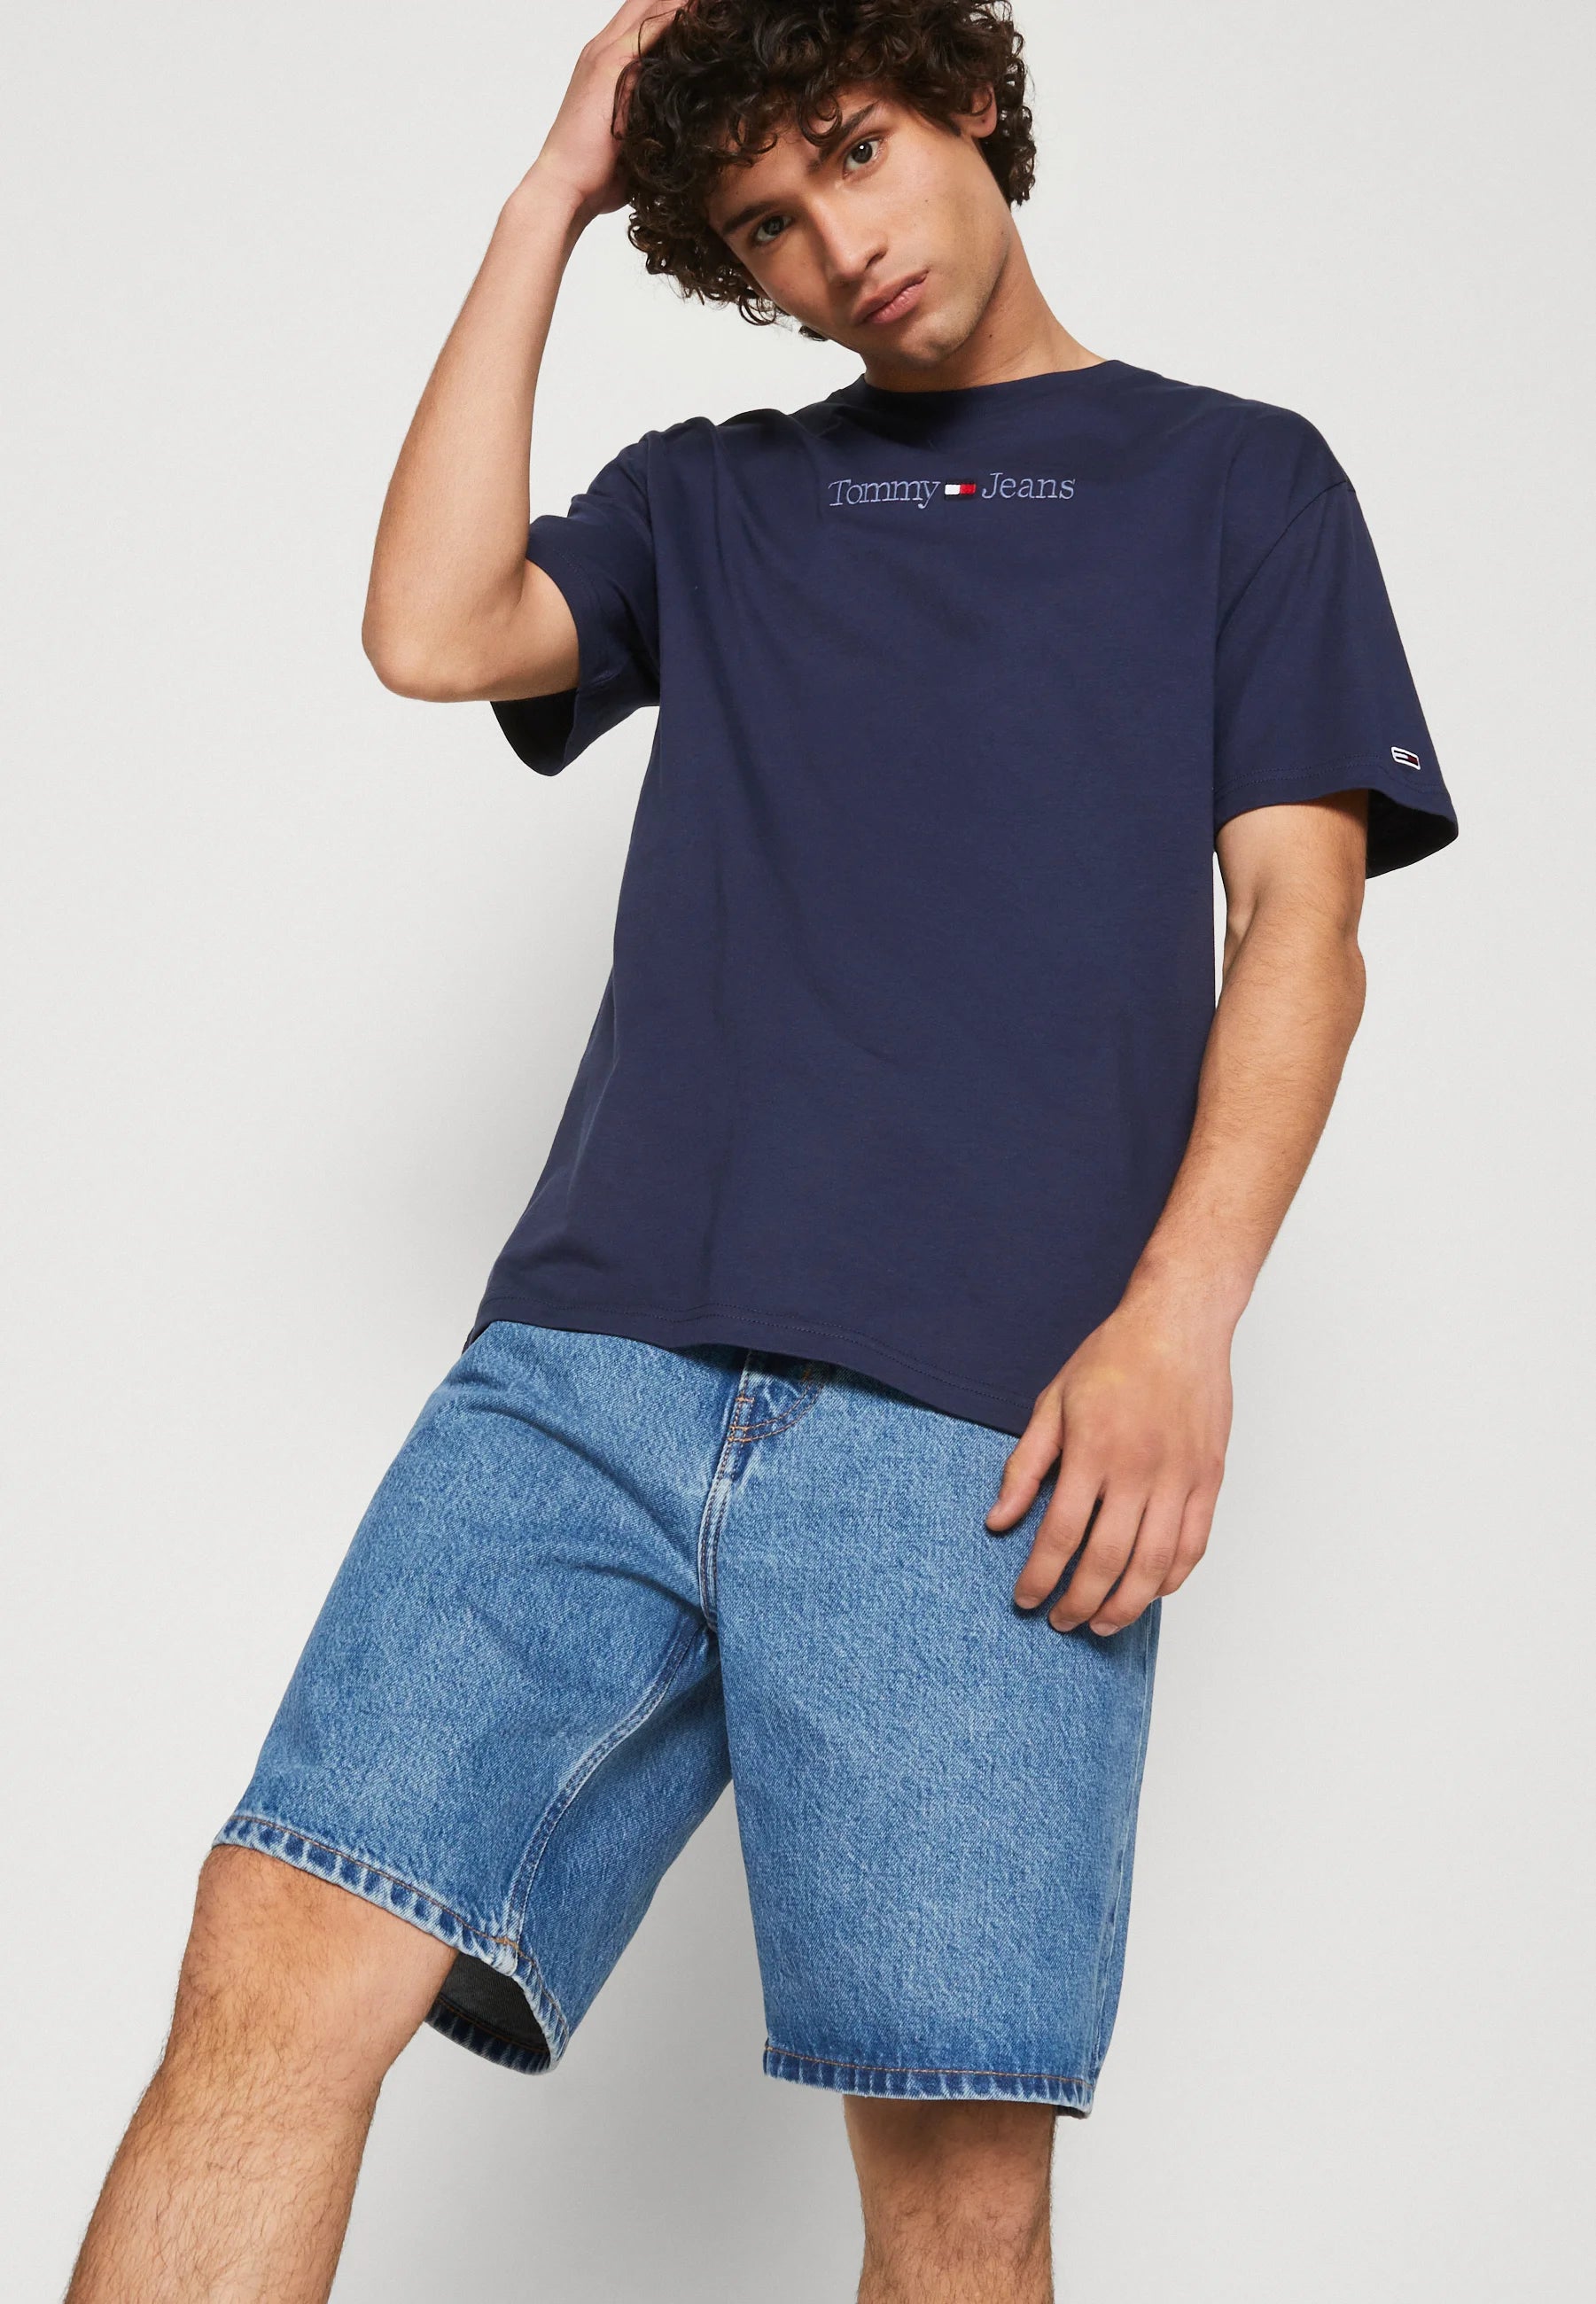 T-Shirt Tommy Jeans marine en coton pour homme I Georgespaul